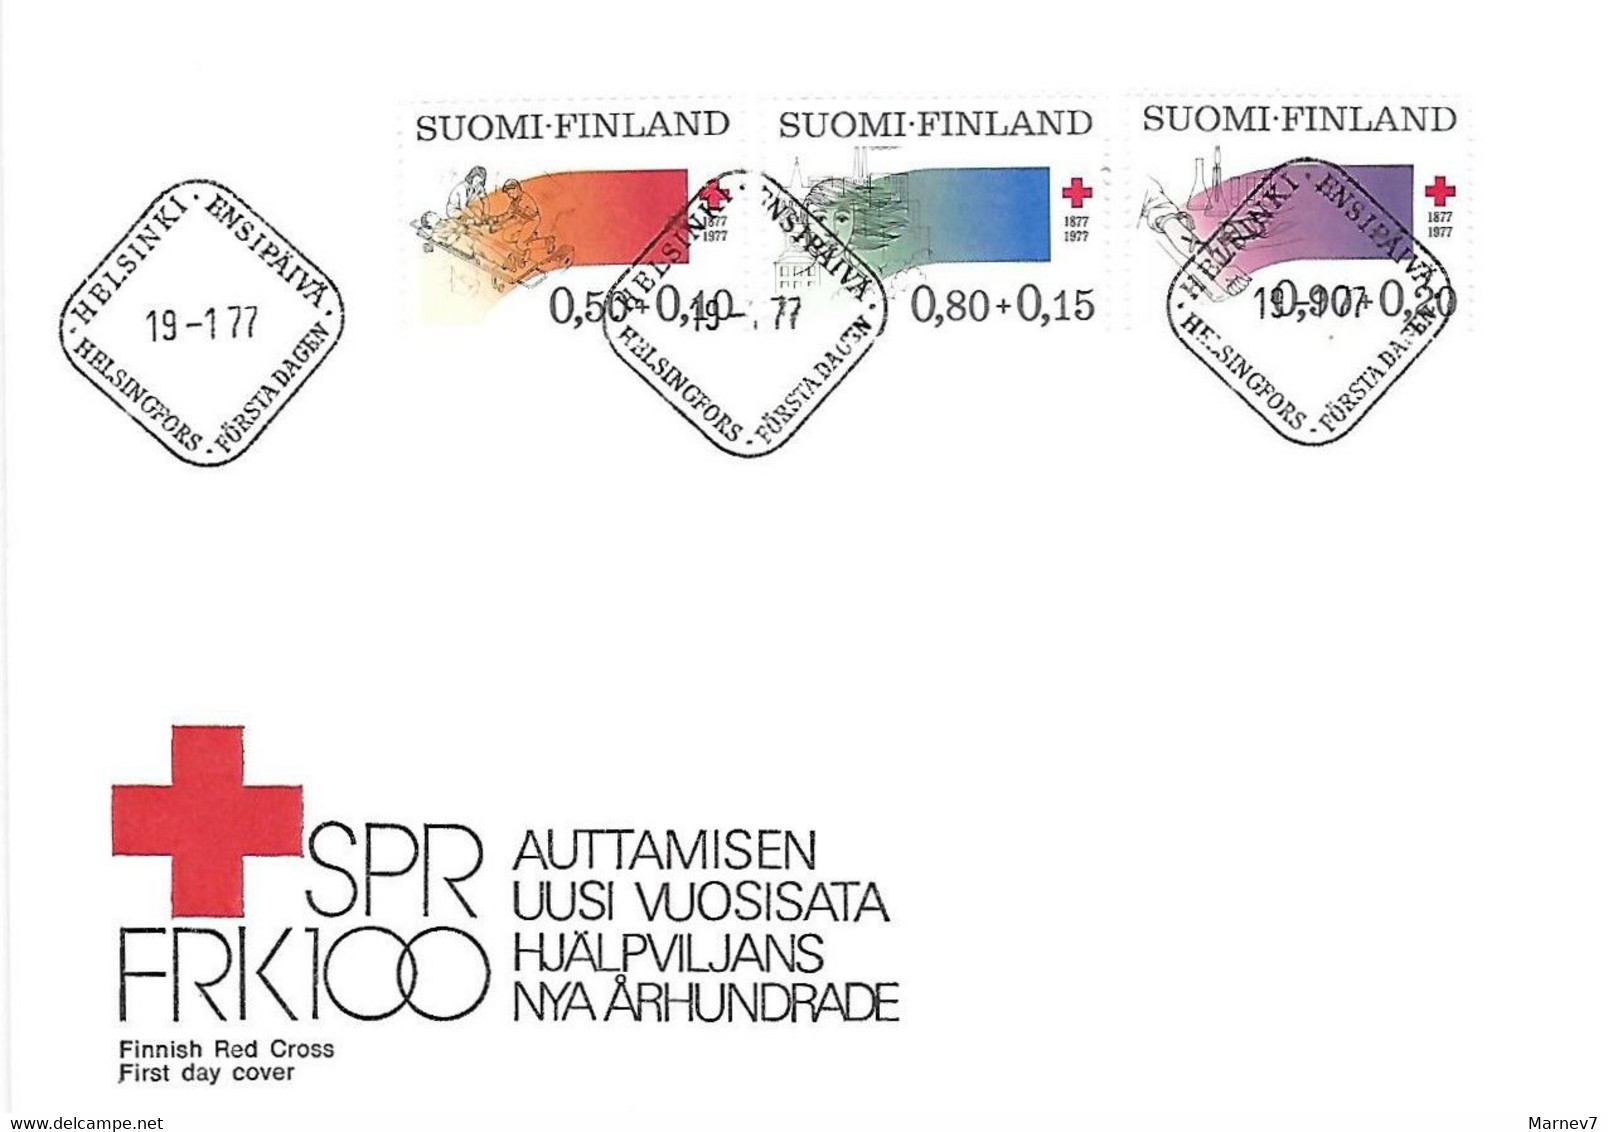 Finlande Suomi N° 763/765 - Enveloppe 1er Jour Don Du Sang Centenaire Croix Rouge - Cad Helsinki 19 1 77 - Année 1977 - Briefe U. Dokumente